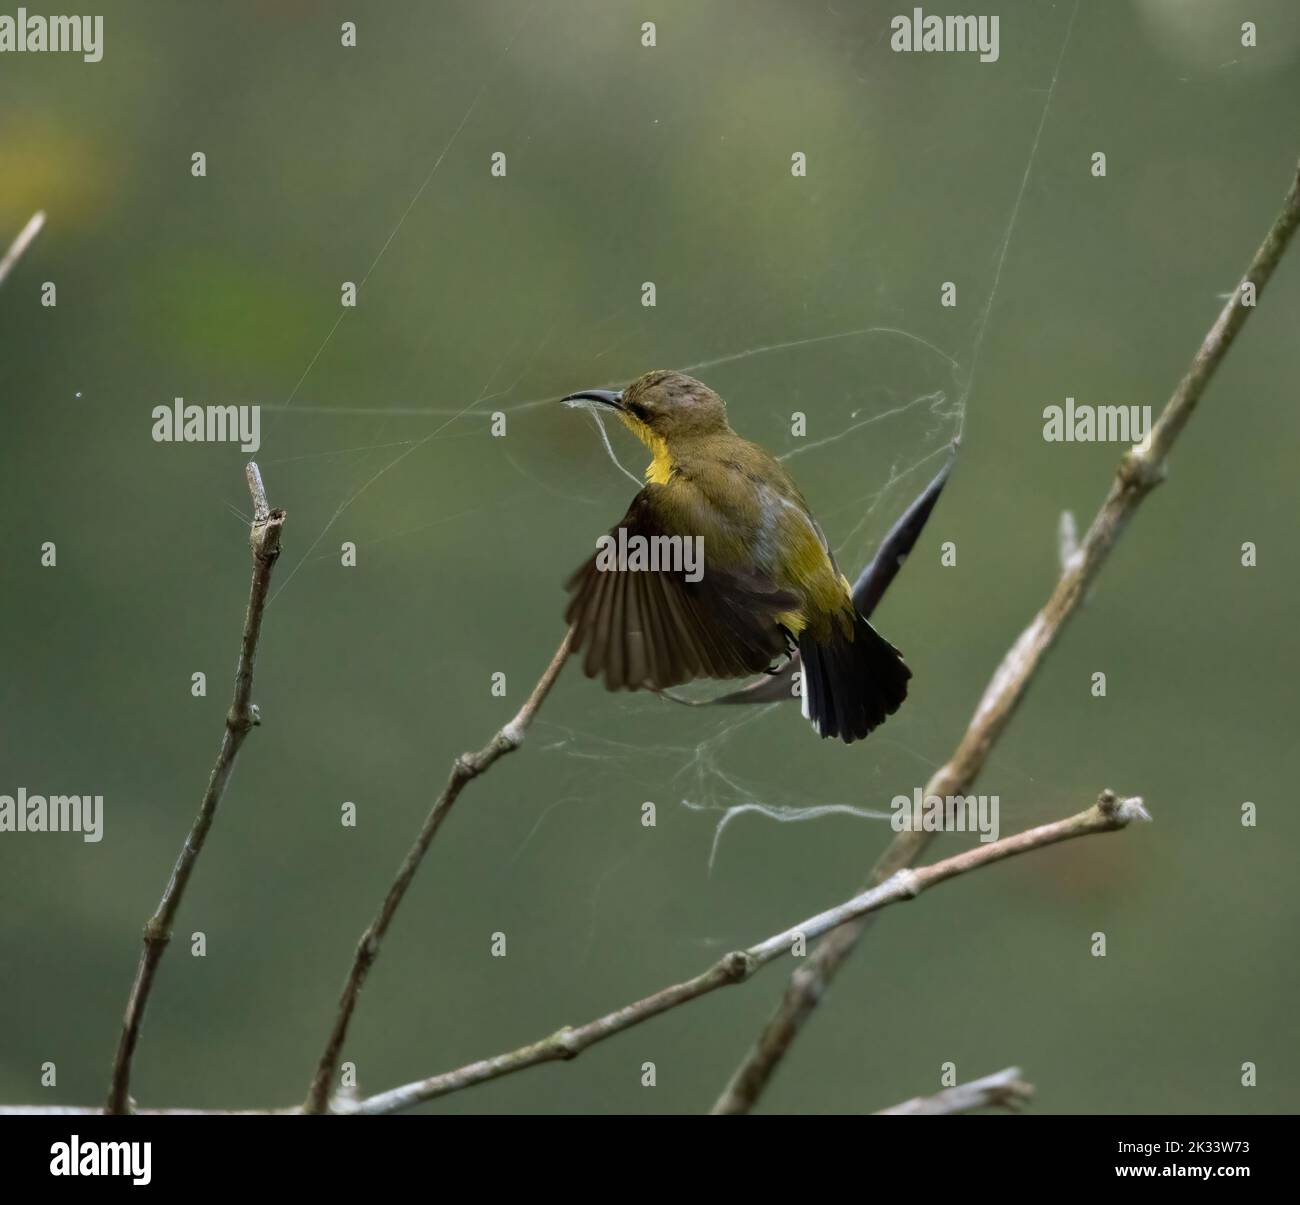 A closeup of a cute Palestine sunbird (Cinnyris osea) near a spider web Stock Photo